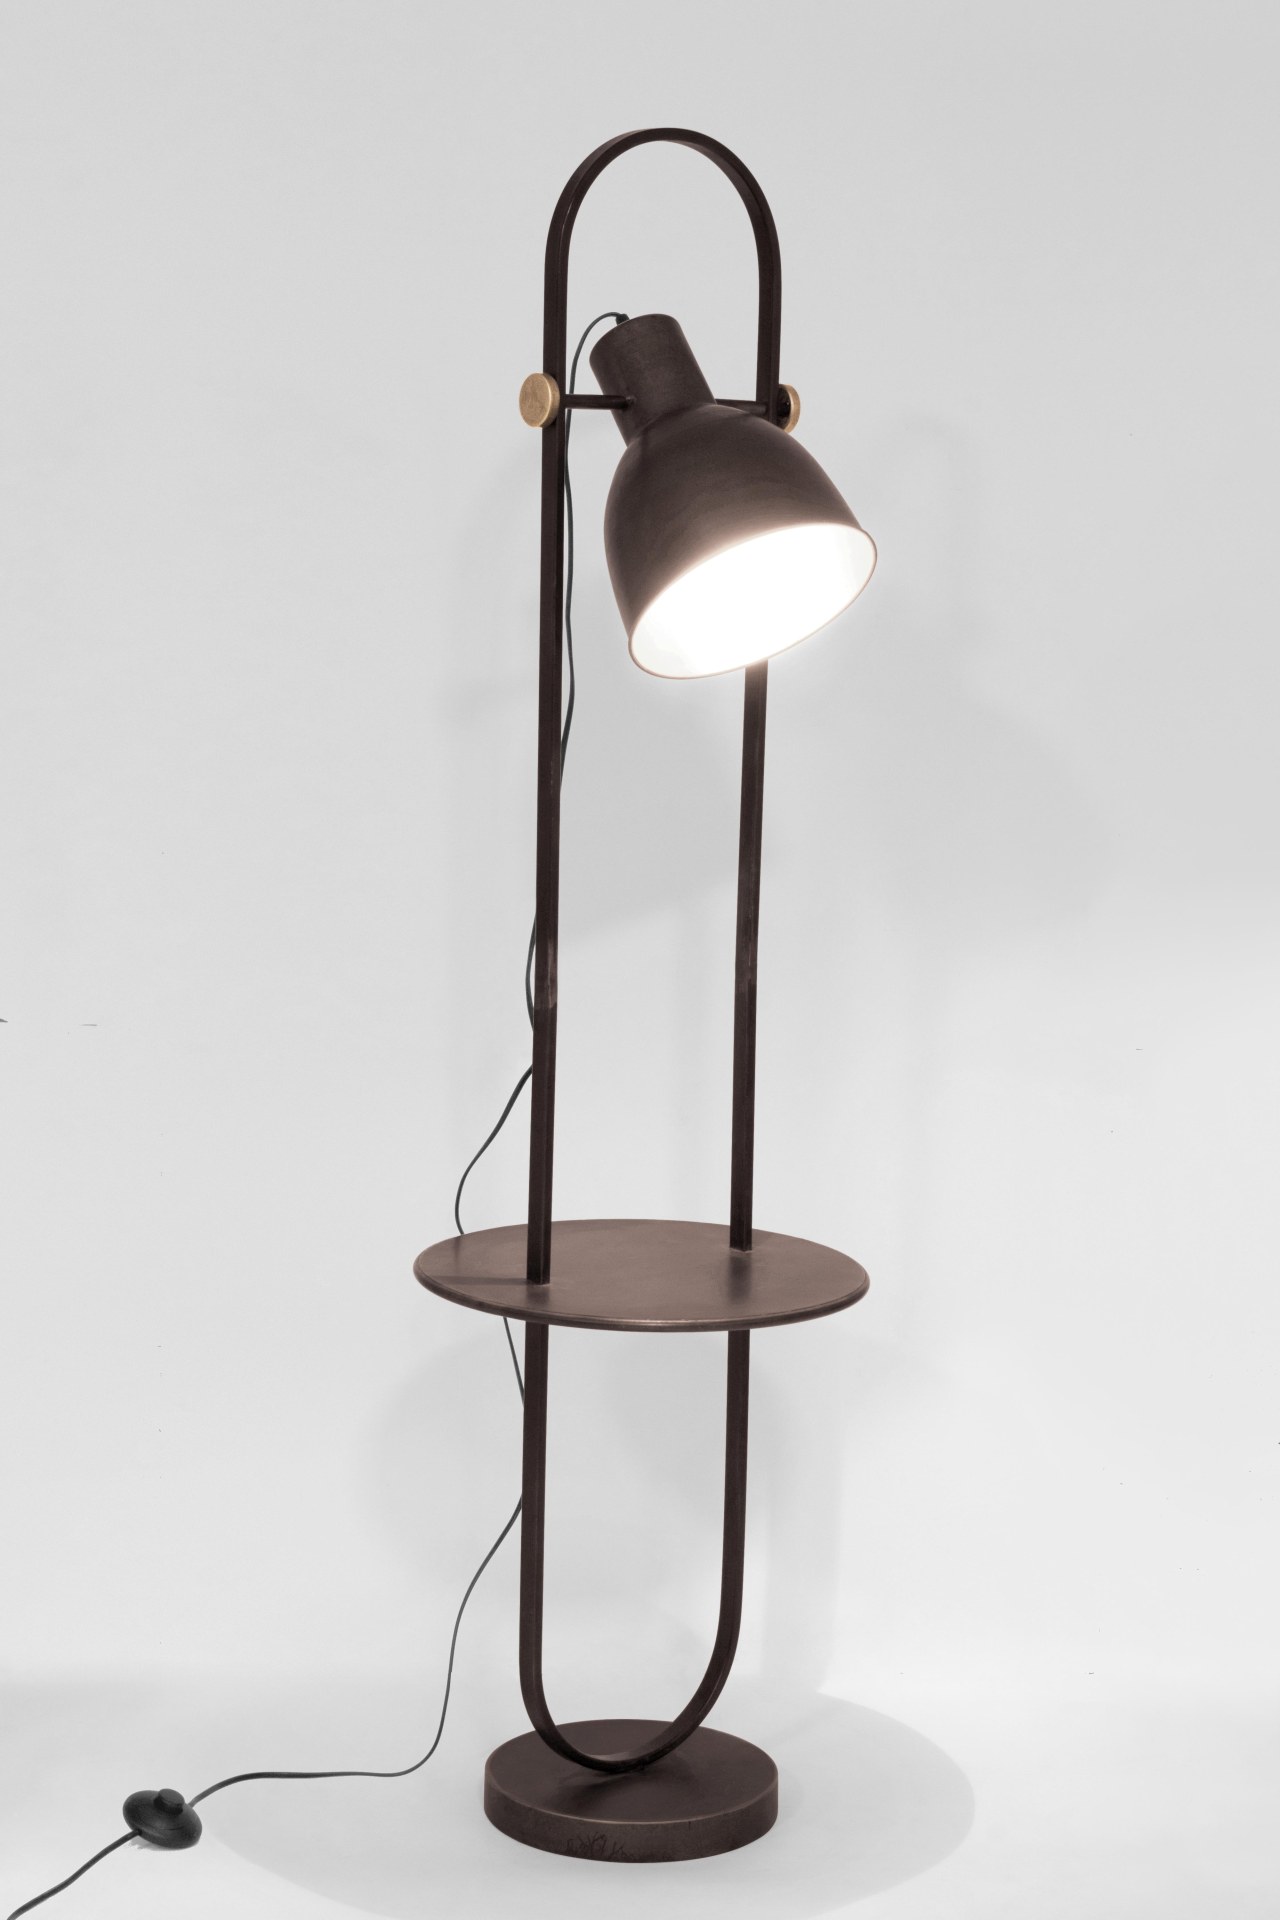 Die Stehleuchte ODD überzeugt mit ihrem klassischen Design. Gefertigt wurde sie aus Metall, welches einen schwarzen Farbton besitzt. Die Lampe besitzt eine Holzplatte in einer natürlichen Farbe. Die Lampe besitzt eine Höhe von 140 cm.